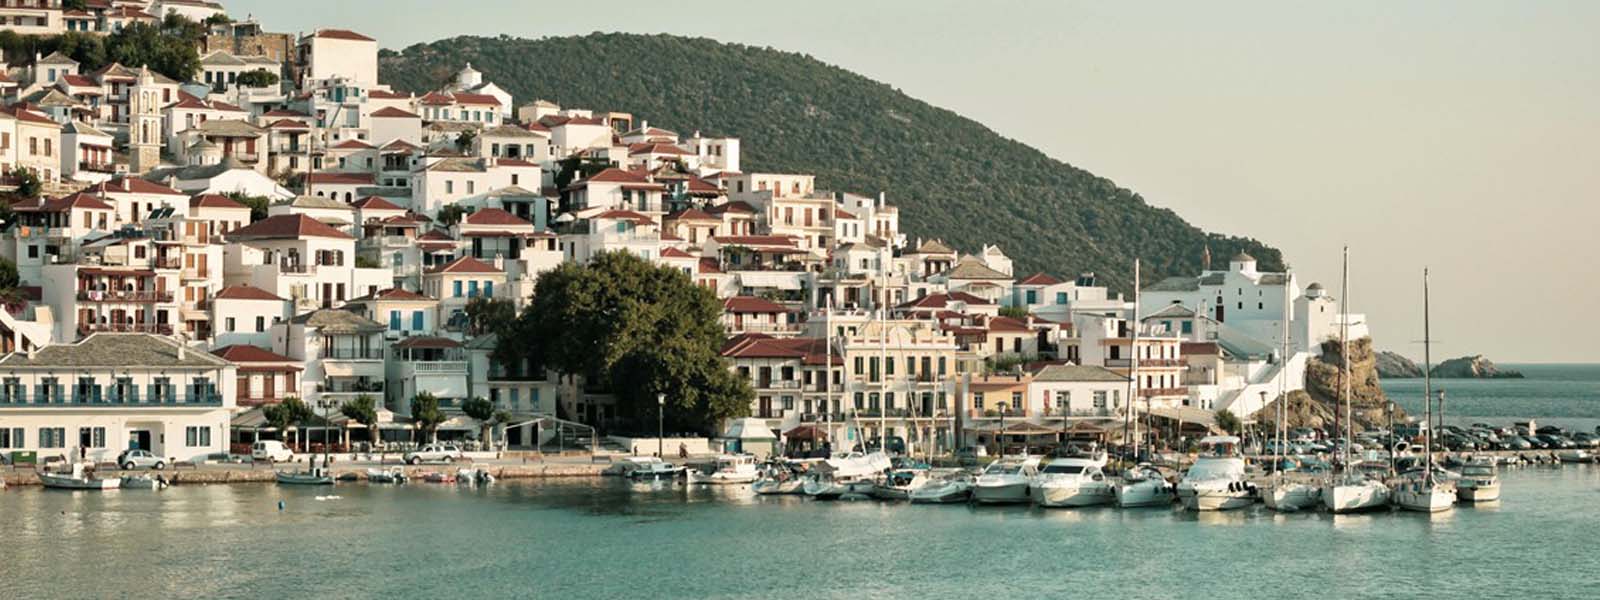 Voyage Skopelos